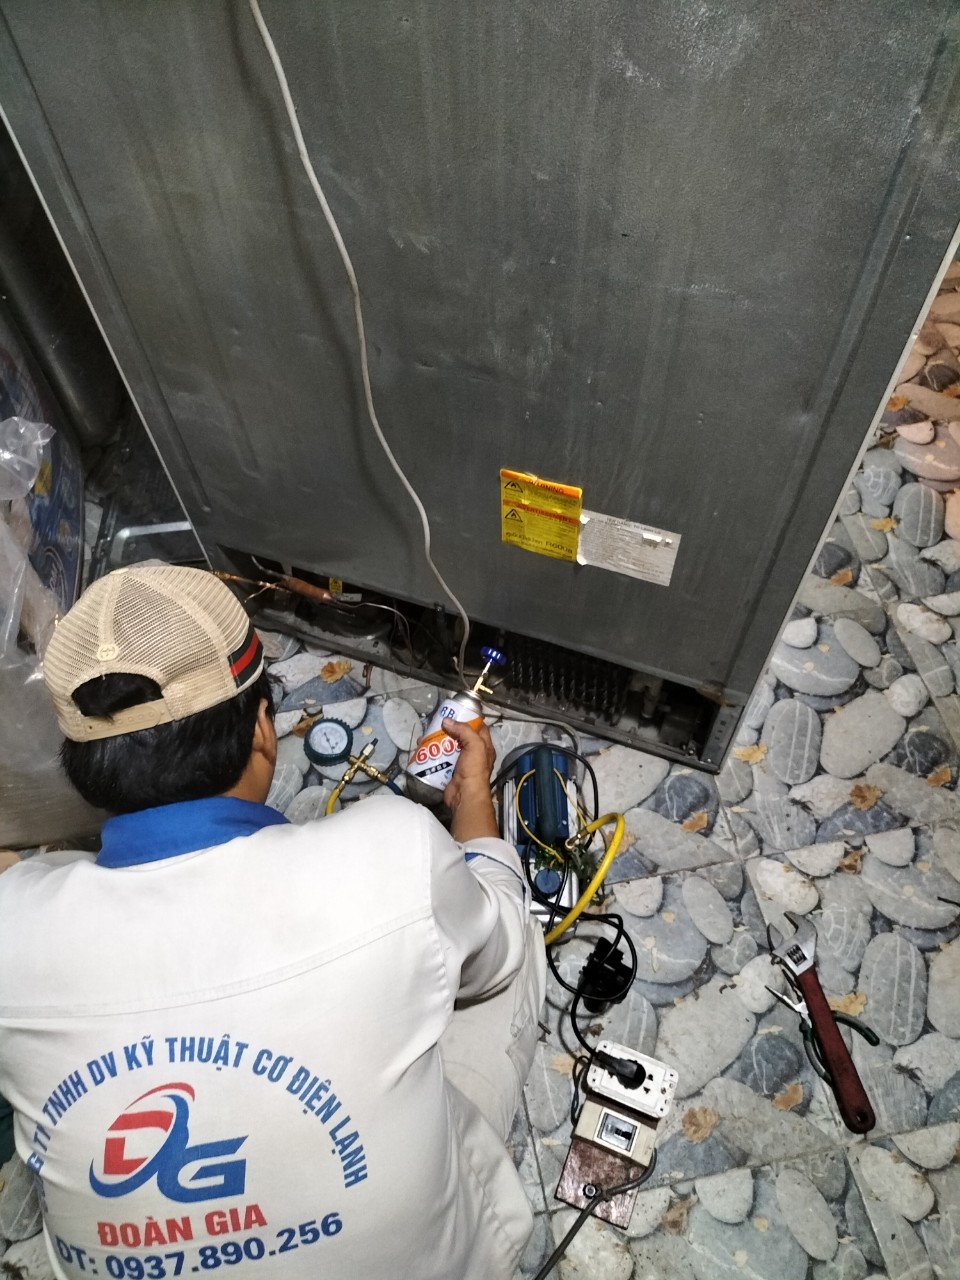 Trung tâm sửa chữa bảo hành tủ lạnh Panasonic